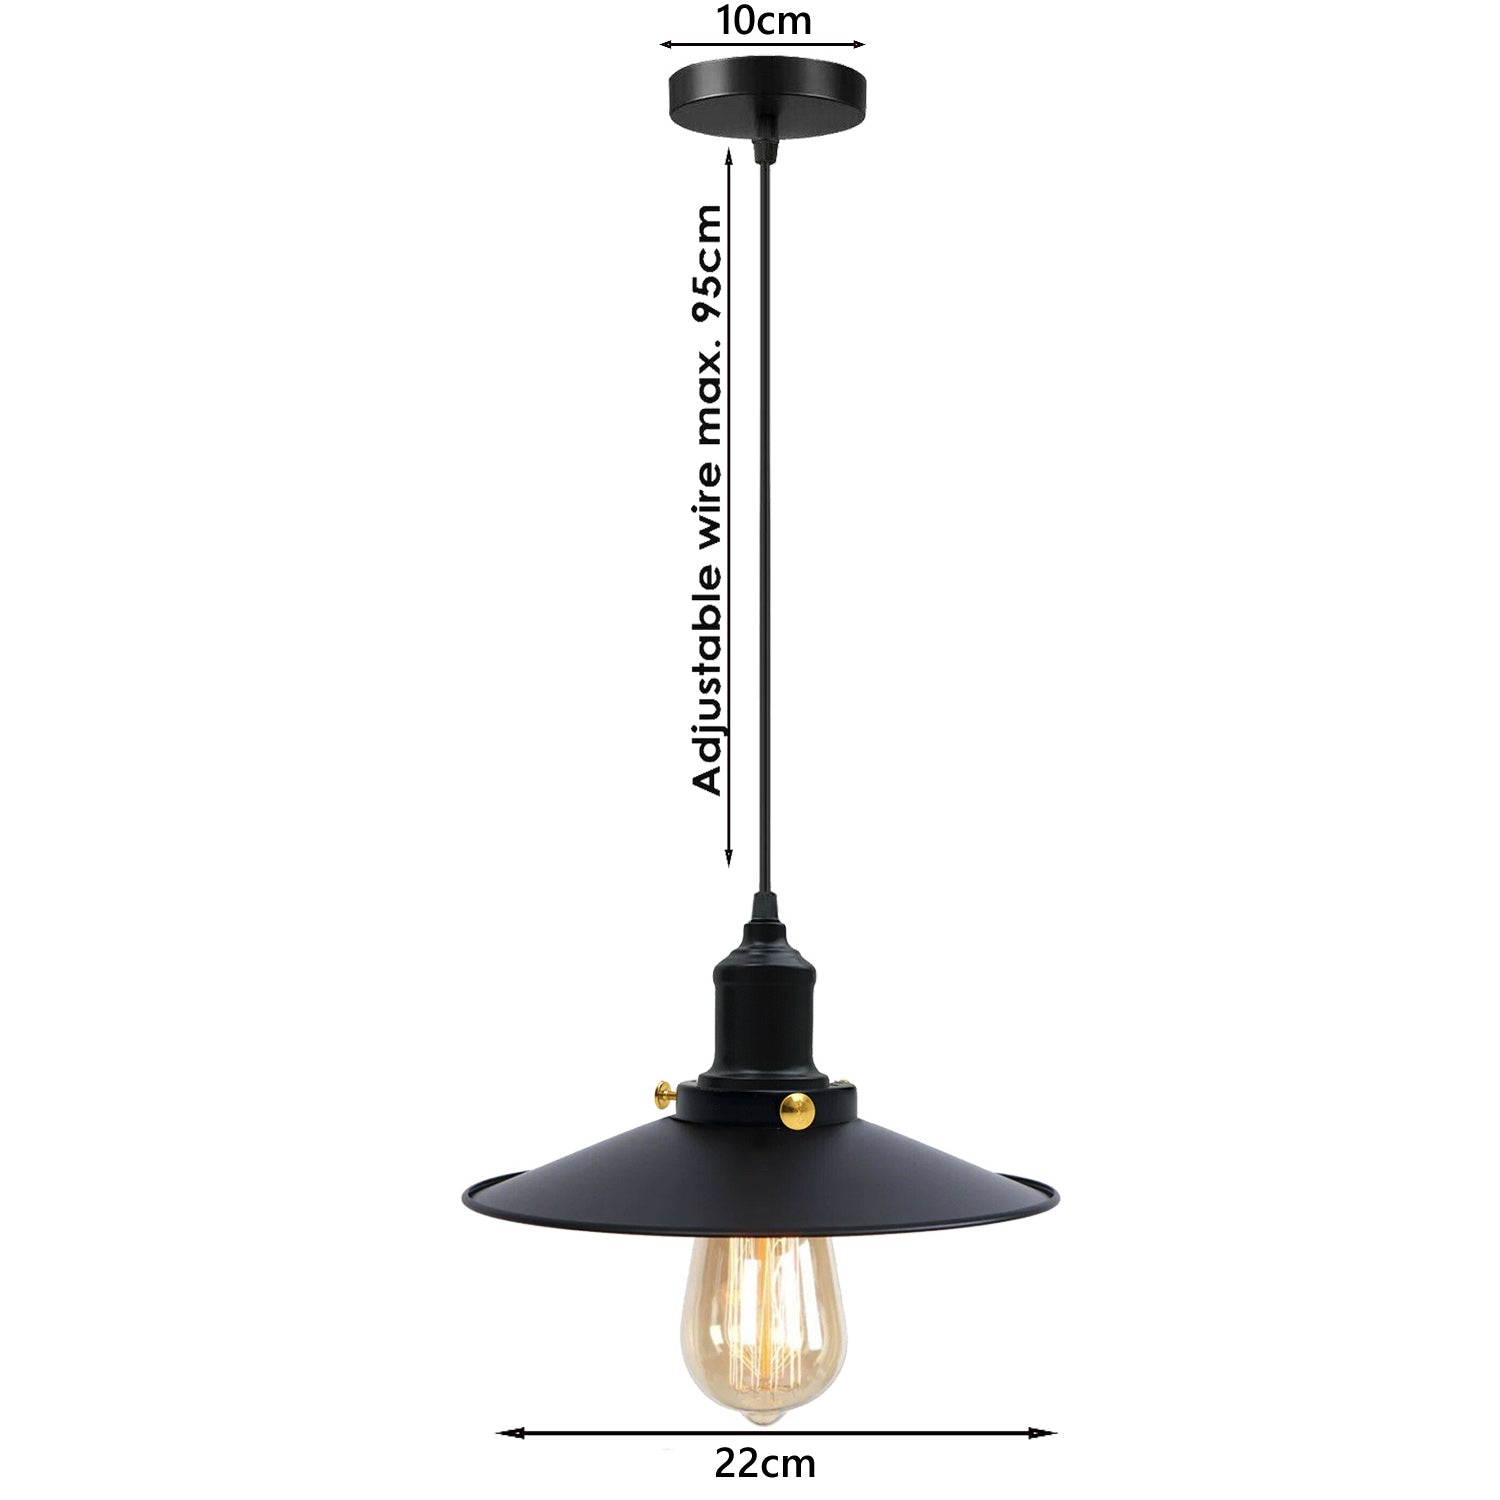 Schwarz-Vintage Deckenlampe Leuchte Hängelampe Retro Industrie Pendelleuchte – Design